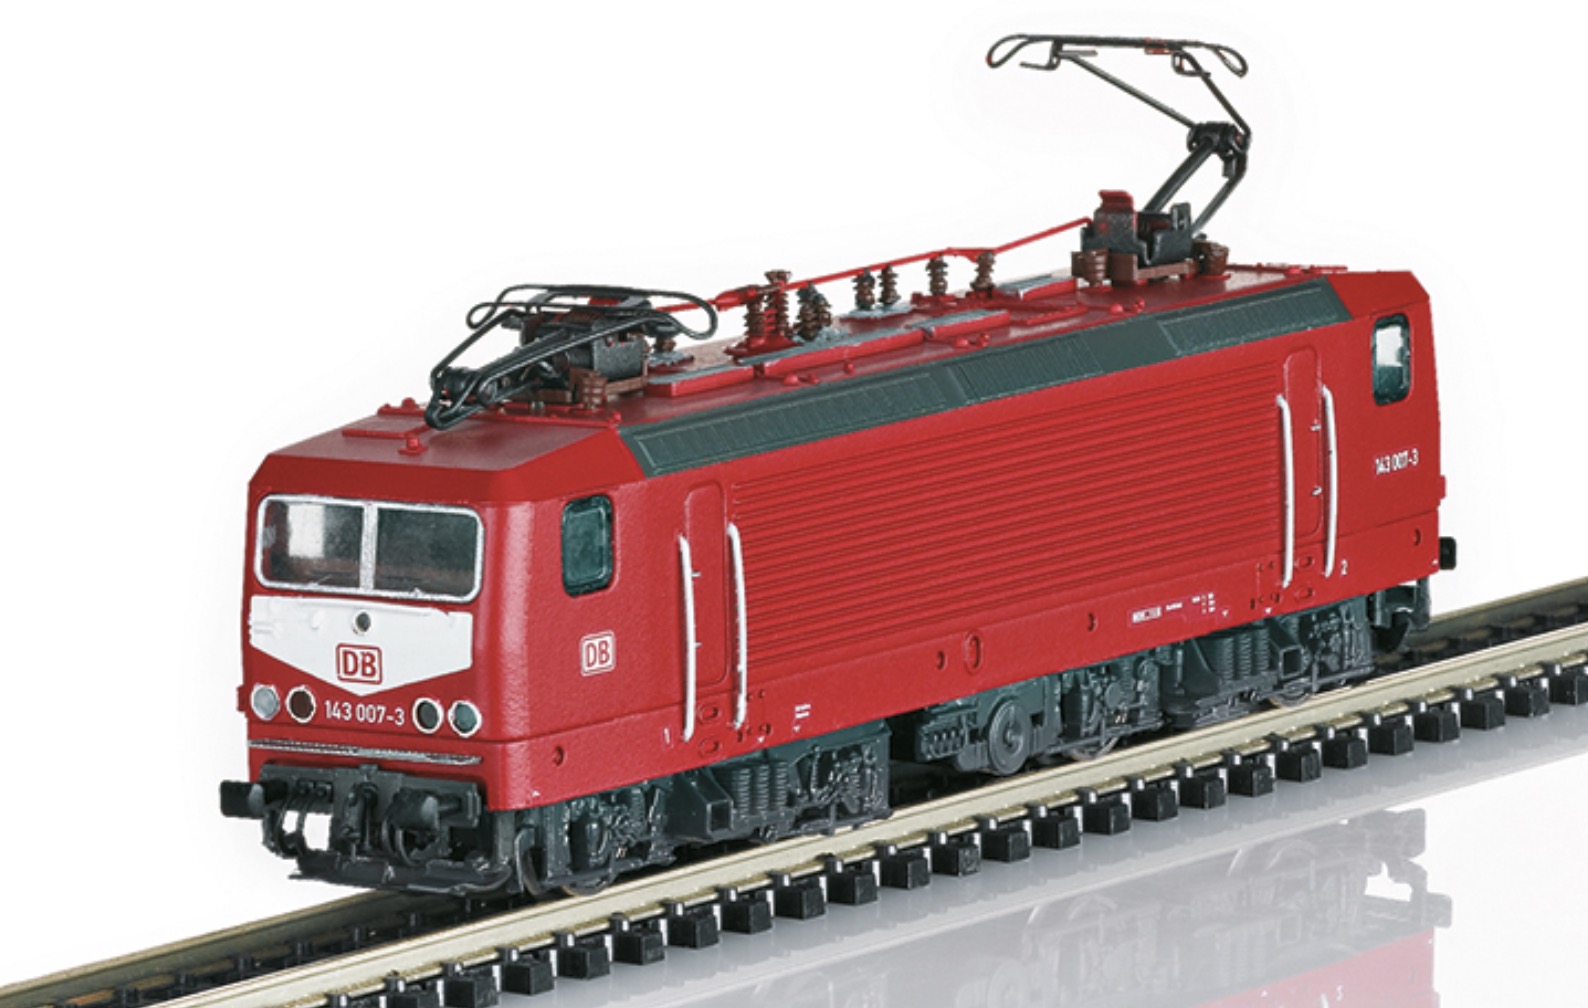 N Scale - Minitrix - 16431 - Locomotive, Electric, Class 143, Epoch V - Deutsche Bundesbahn - 143 007-3